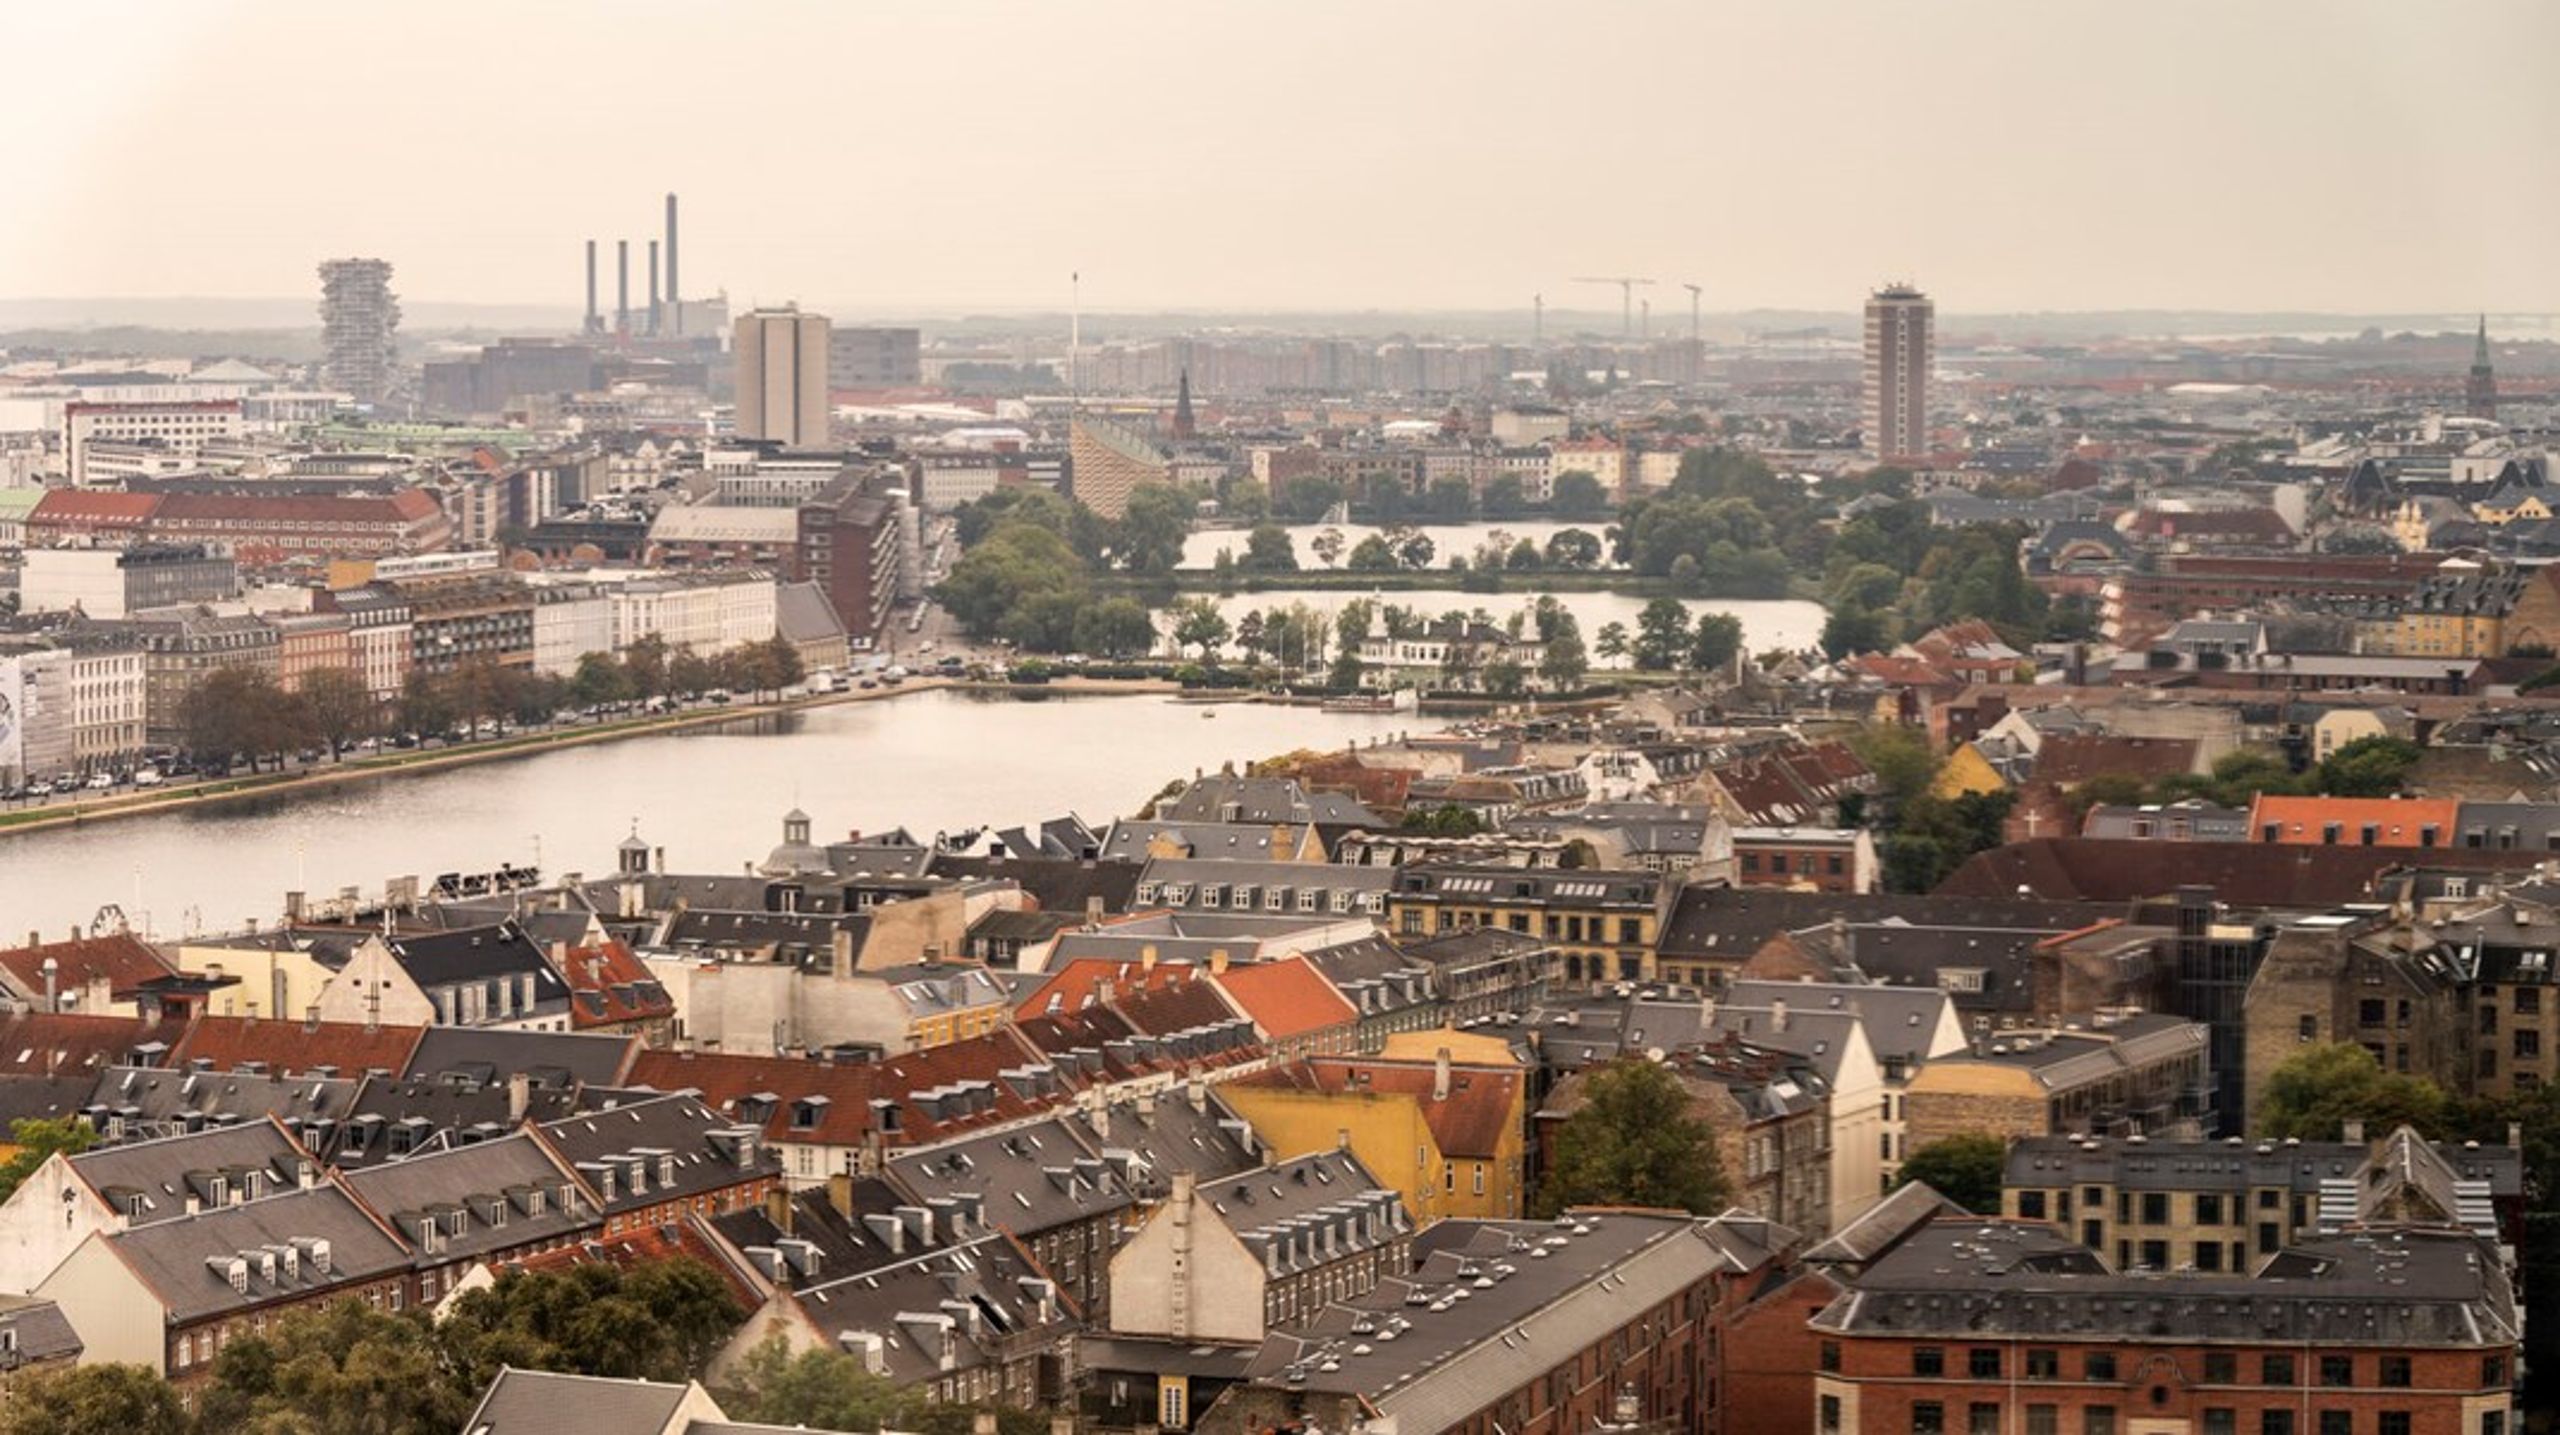 Det kan blive rigtig dyrt, hvis hver enkelt bygning i Danmark skal leve op til energimærke E inden 2033, mener flere ejendomslobbyister.